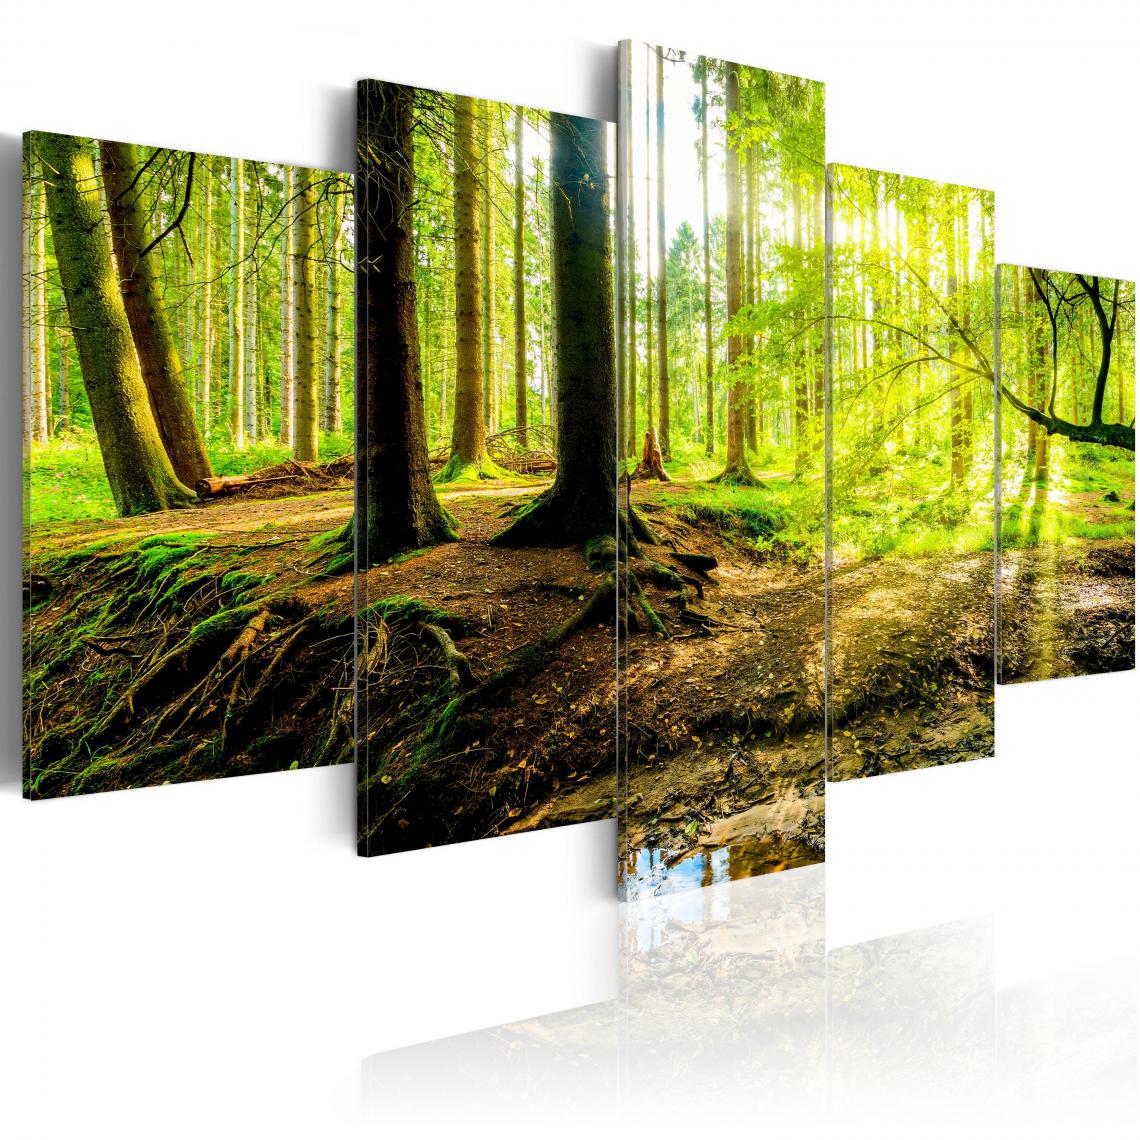 Decoshop26 - Tableau sur toile en 5 panneaux décoration murale image imprimée cadre en bois à suspendre Poésie d'une forêt 200x100 cm 11_0006353 - Tableaux, peintures